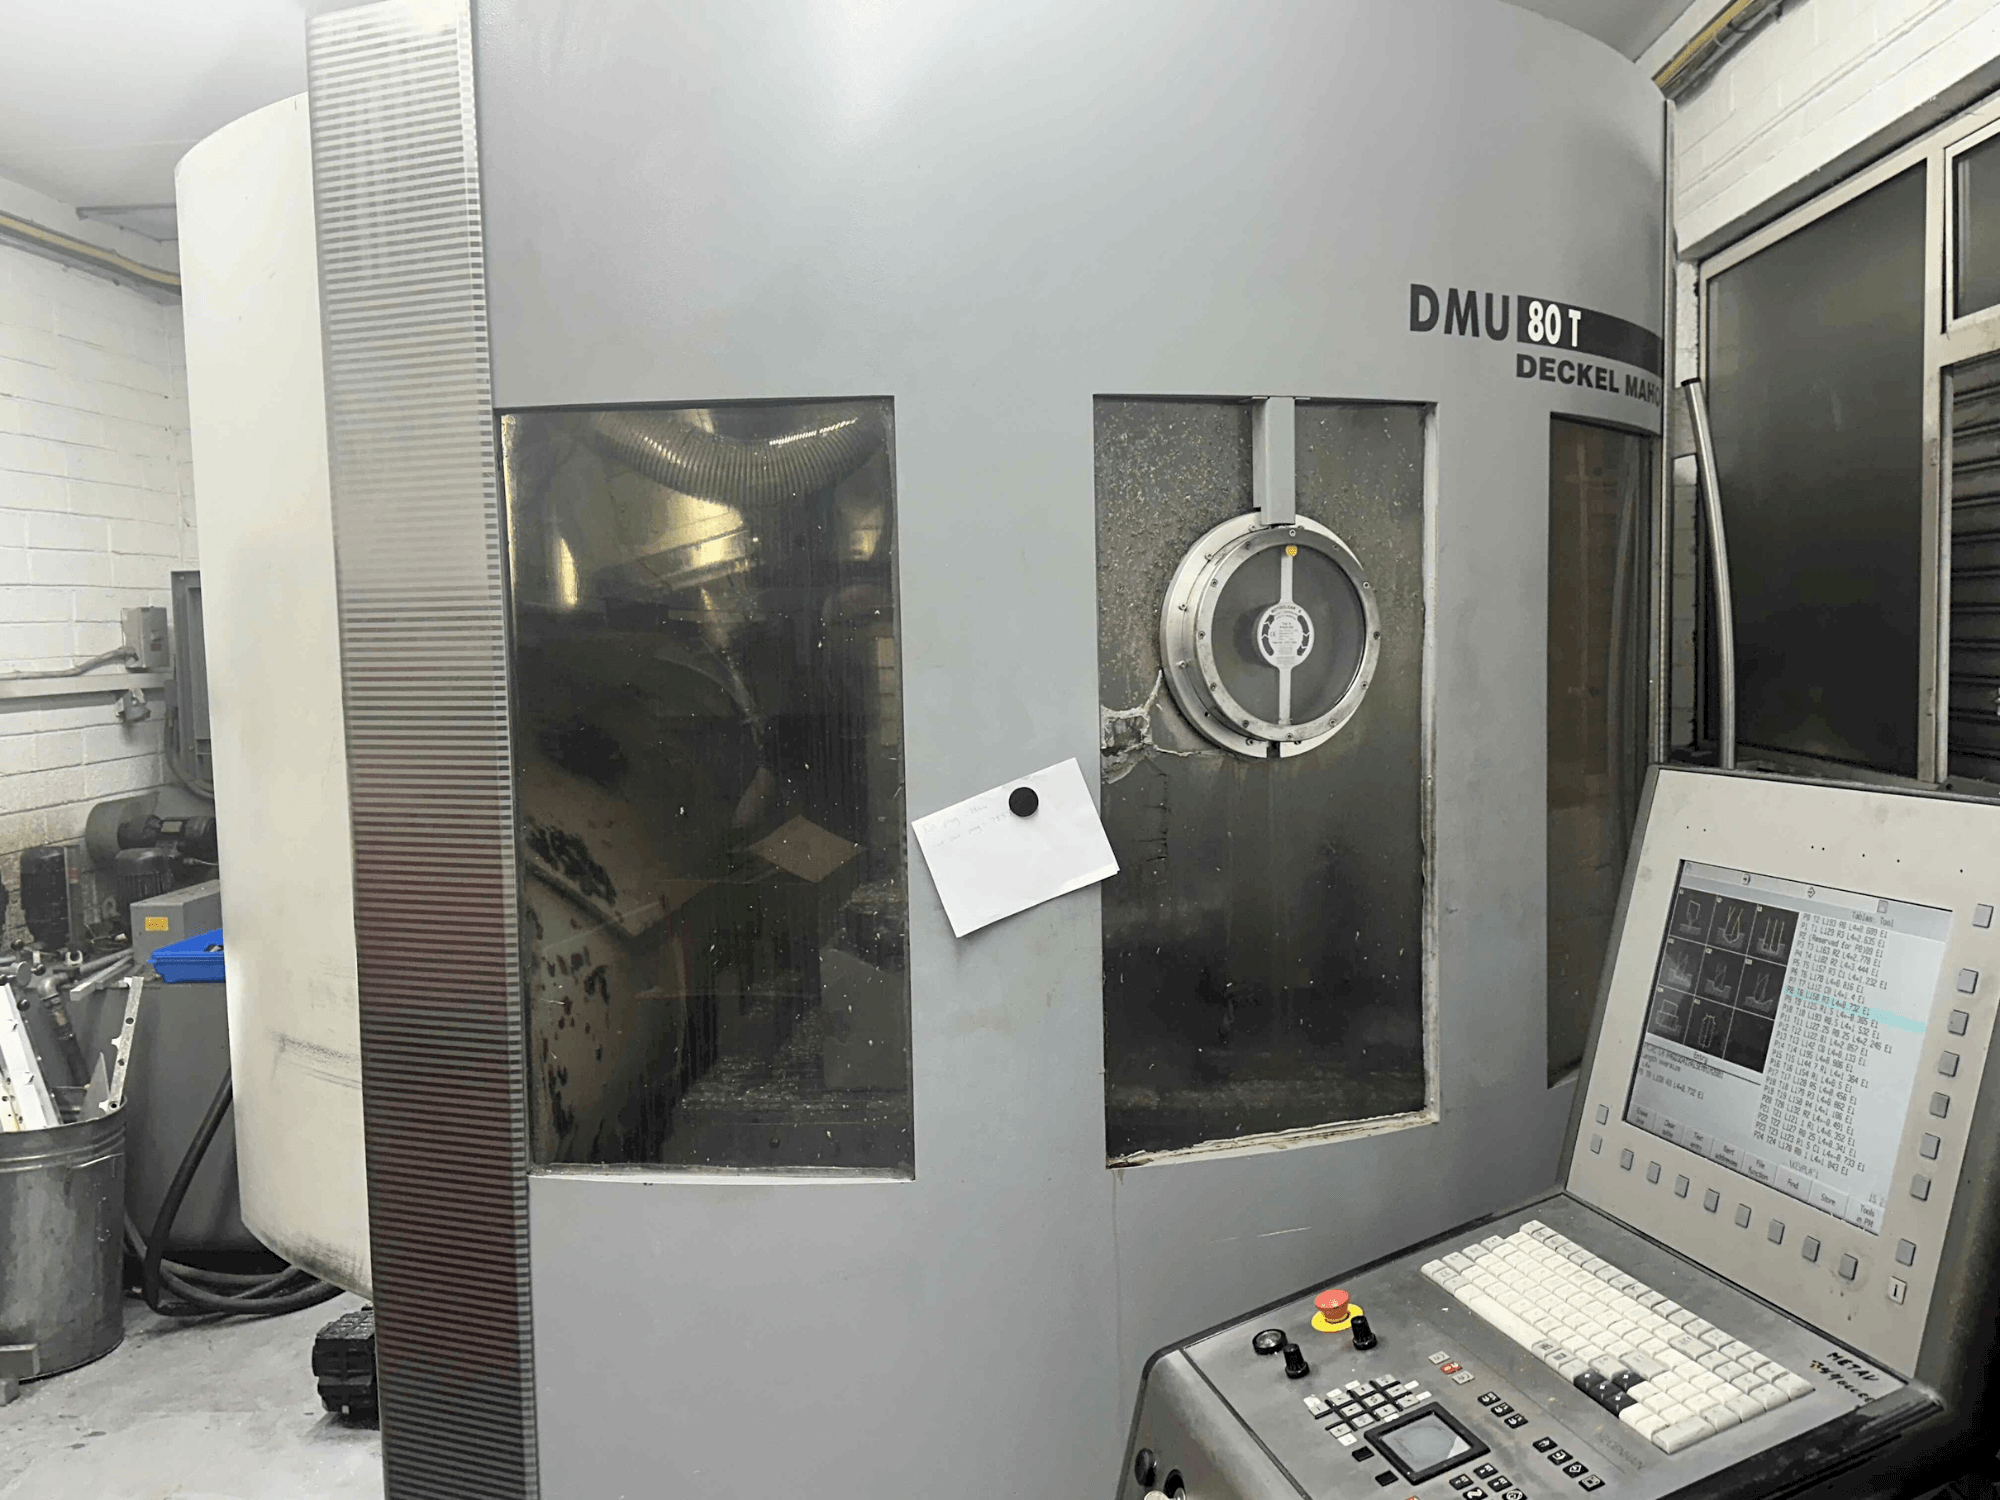 Frontansicht der DECKEL MAHO DMU 80T (2002)  Maschine